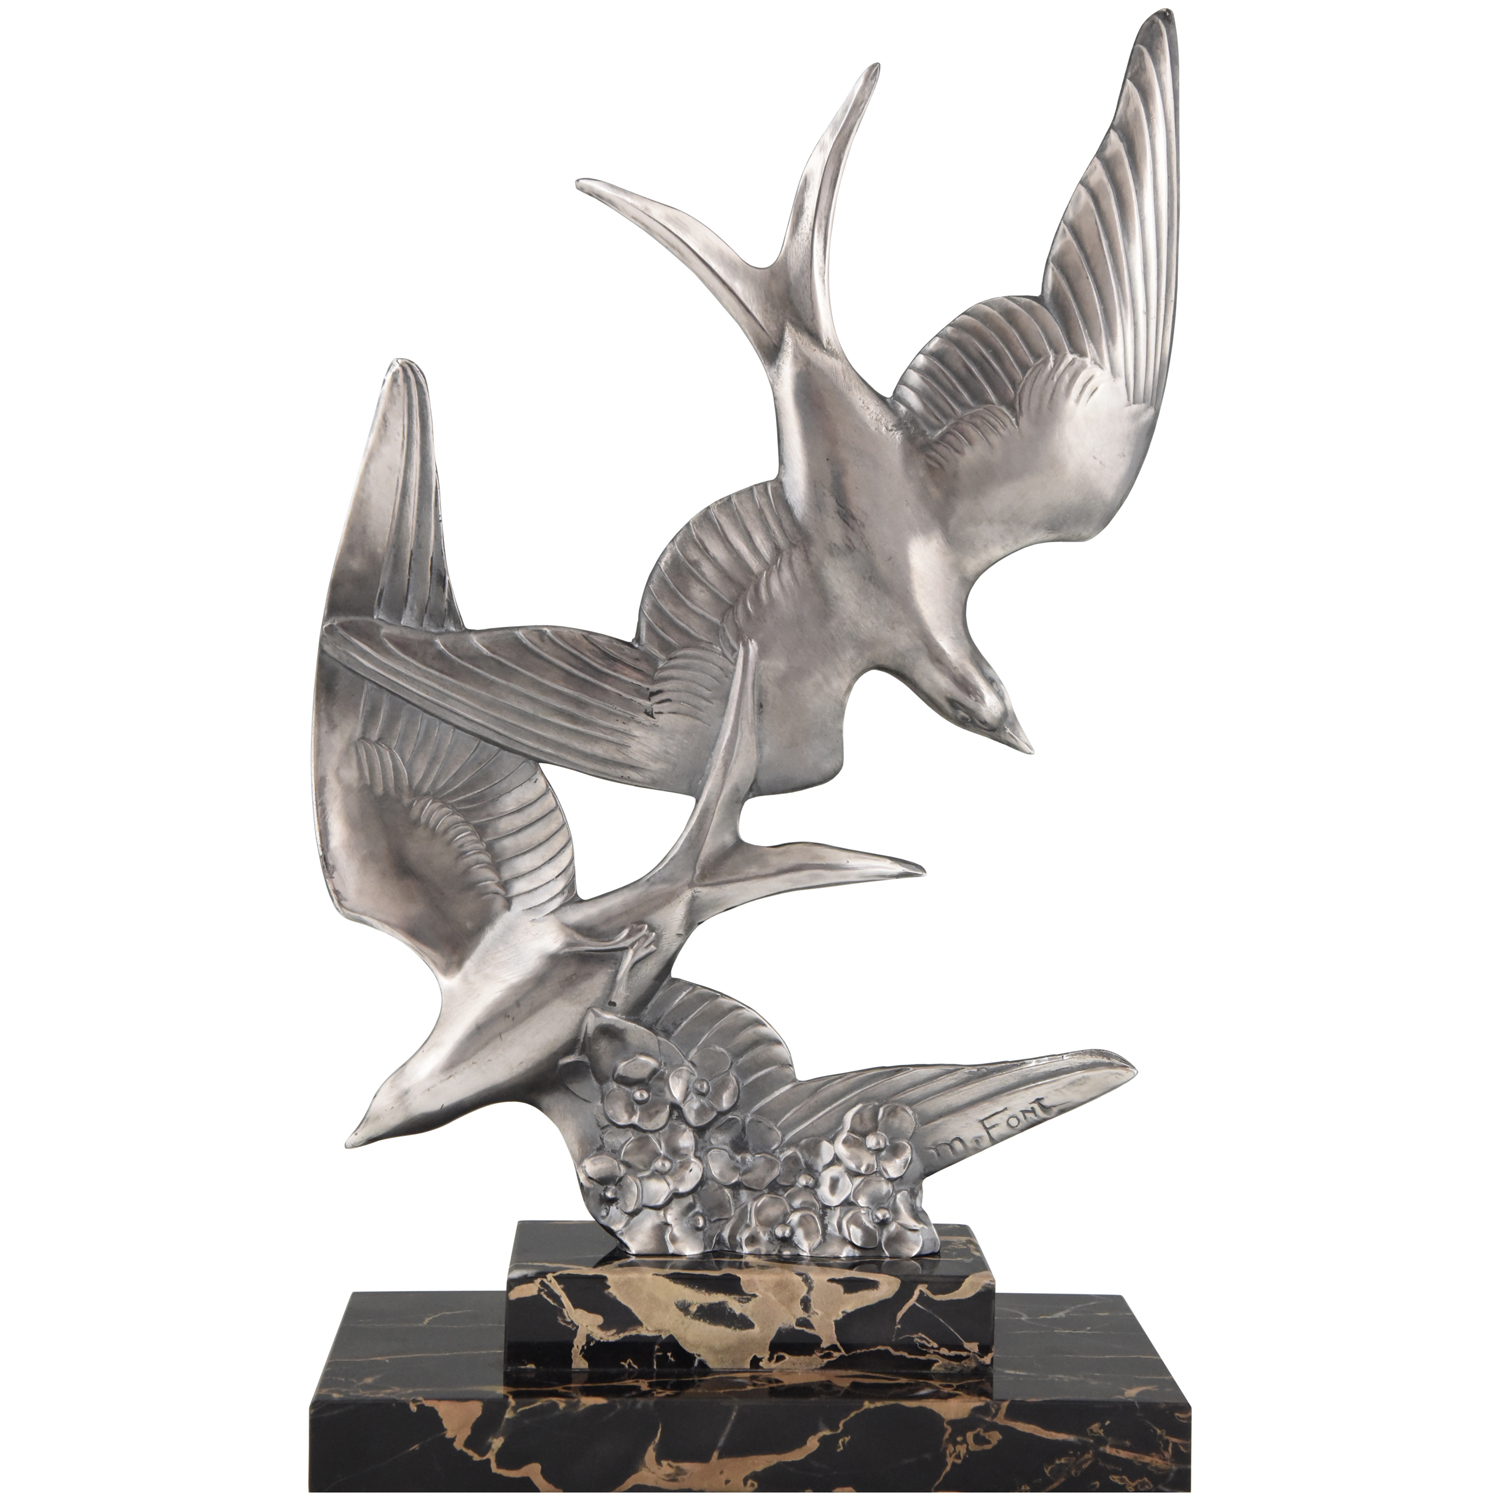 Art Deco sculpture of two flying birds.